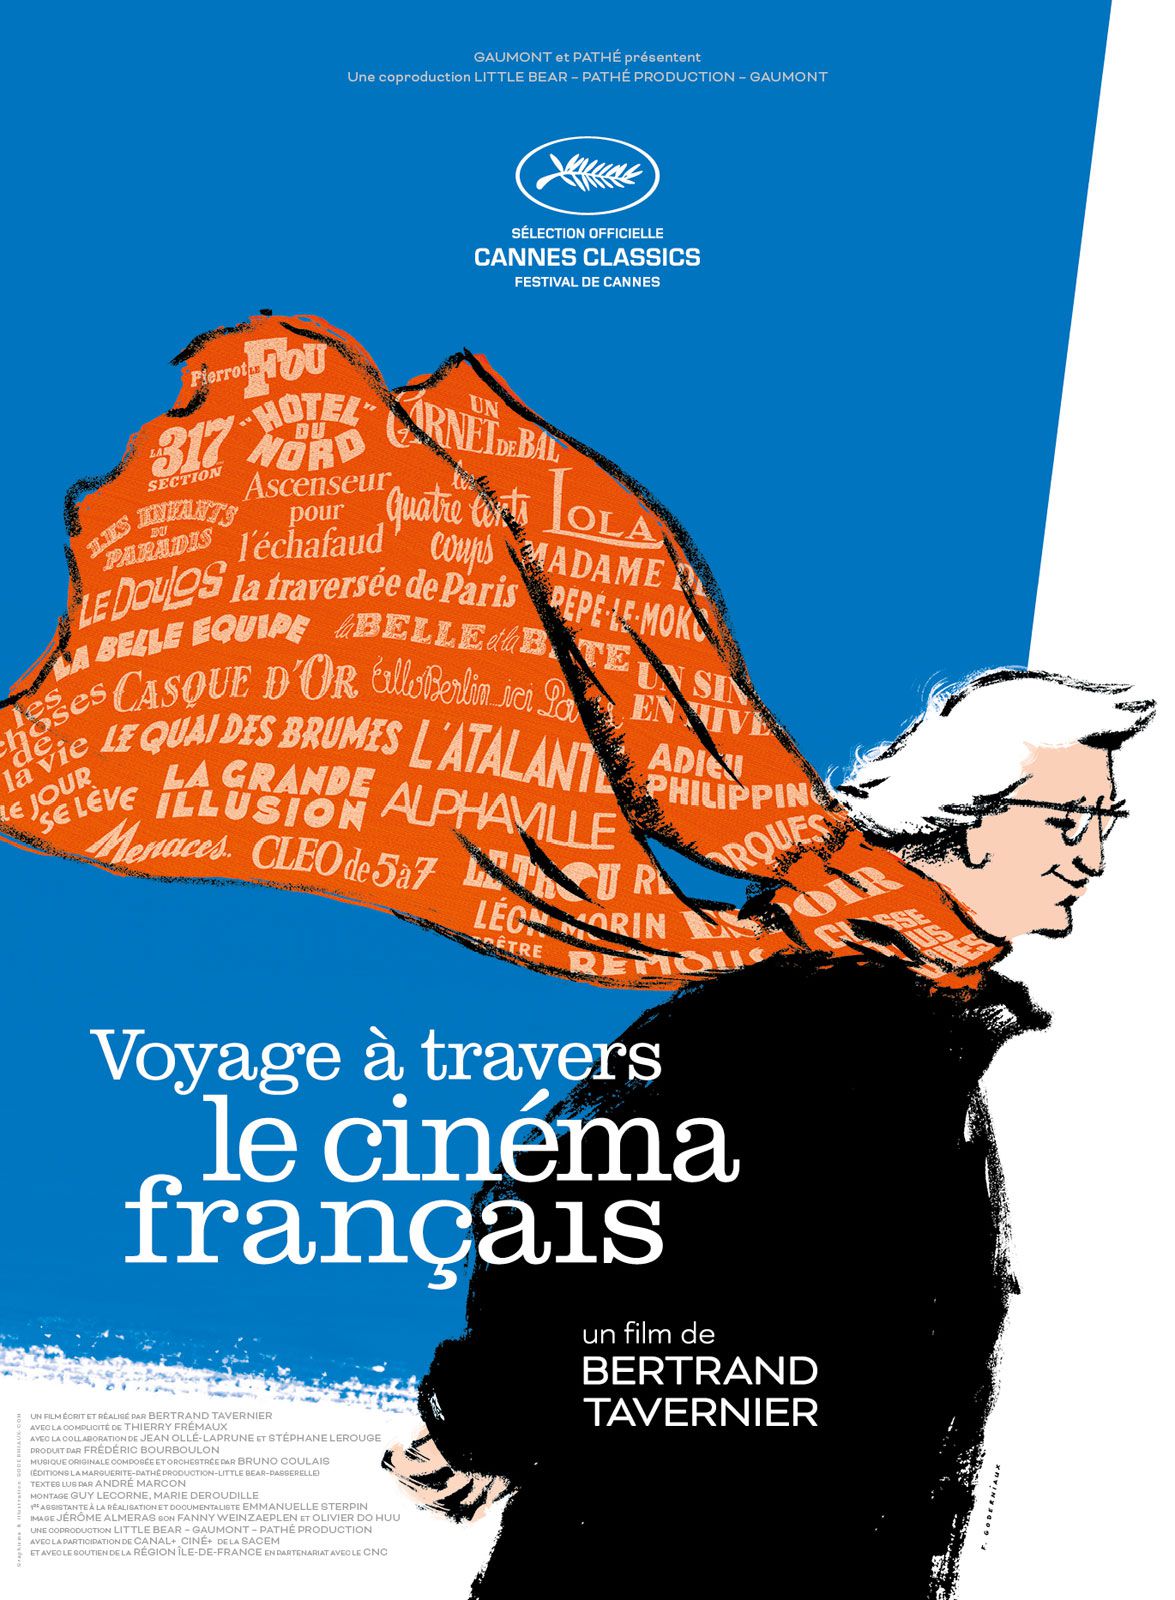 Voyage à travers le cinéma français - Documentaire (2016) streaming VF gratuit complet